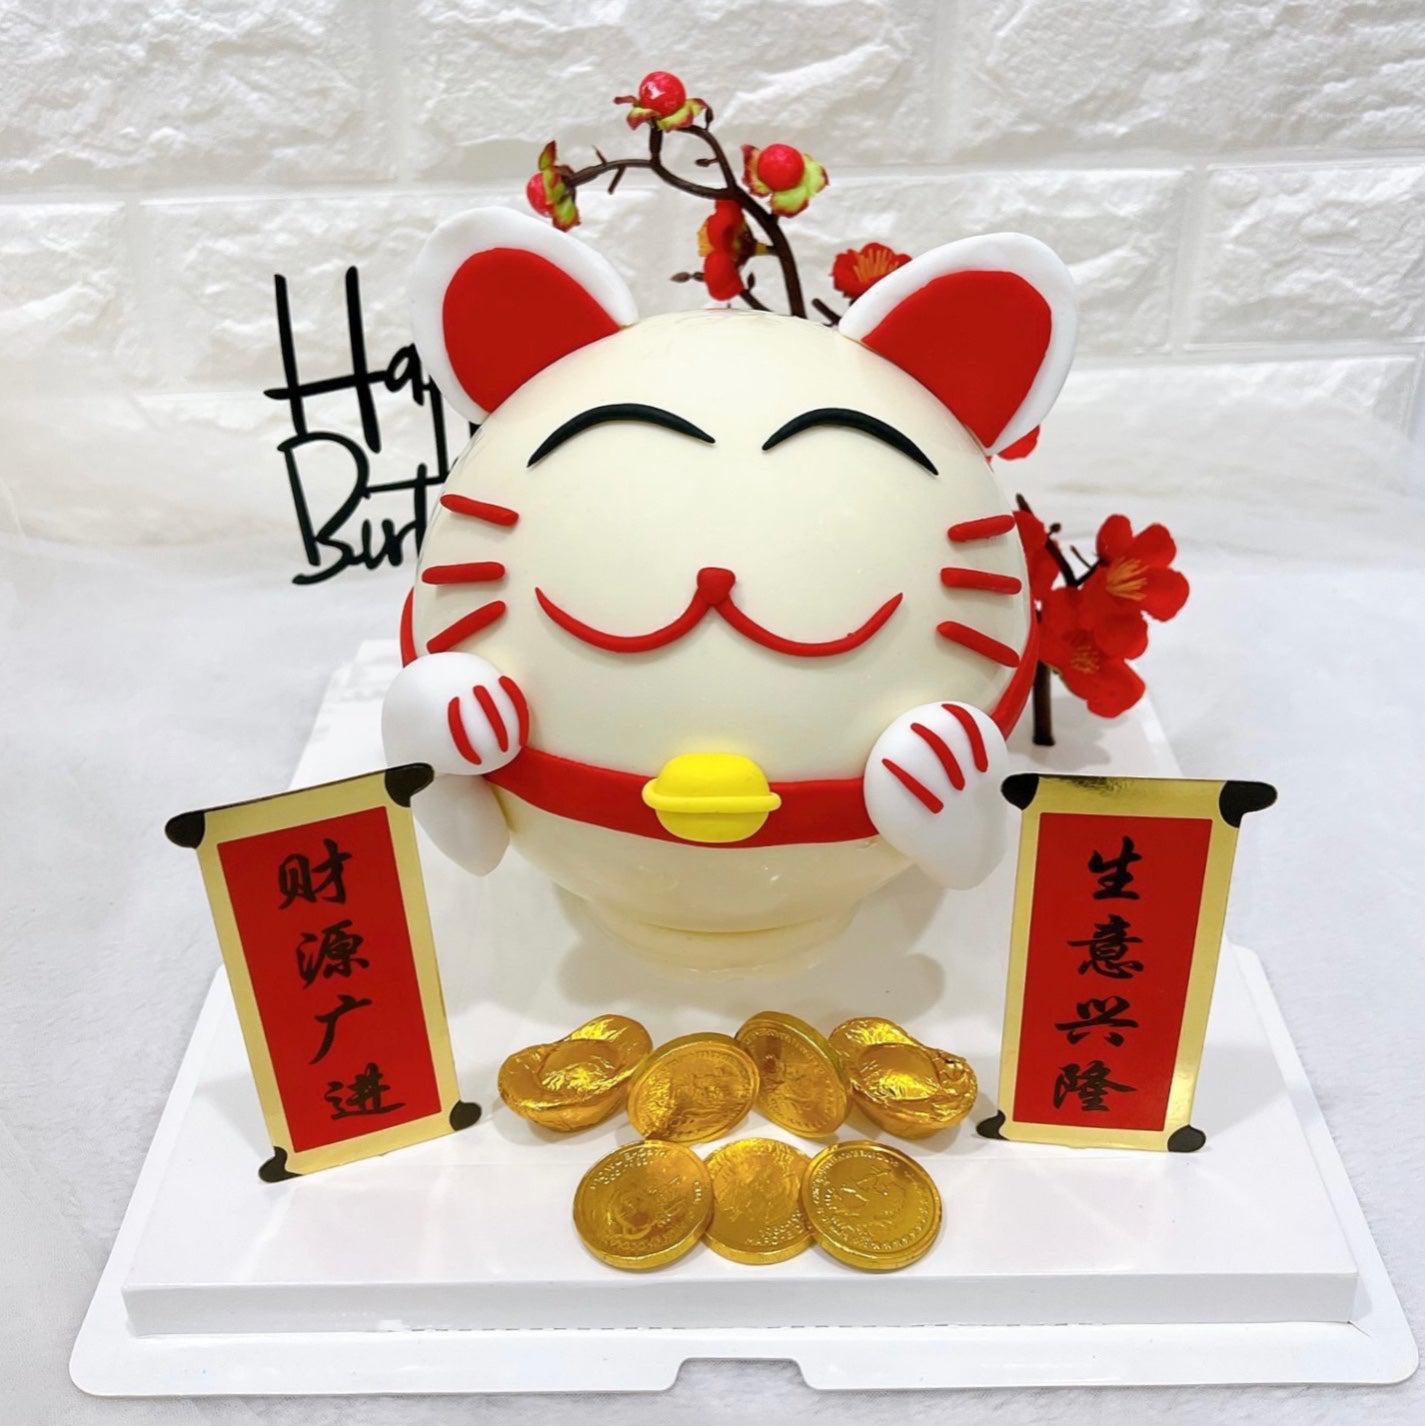 招财猫 Fortune Cat Cake | Cake Together | Birthday Cake Delivery - Cake  Together